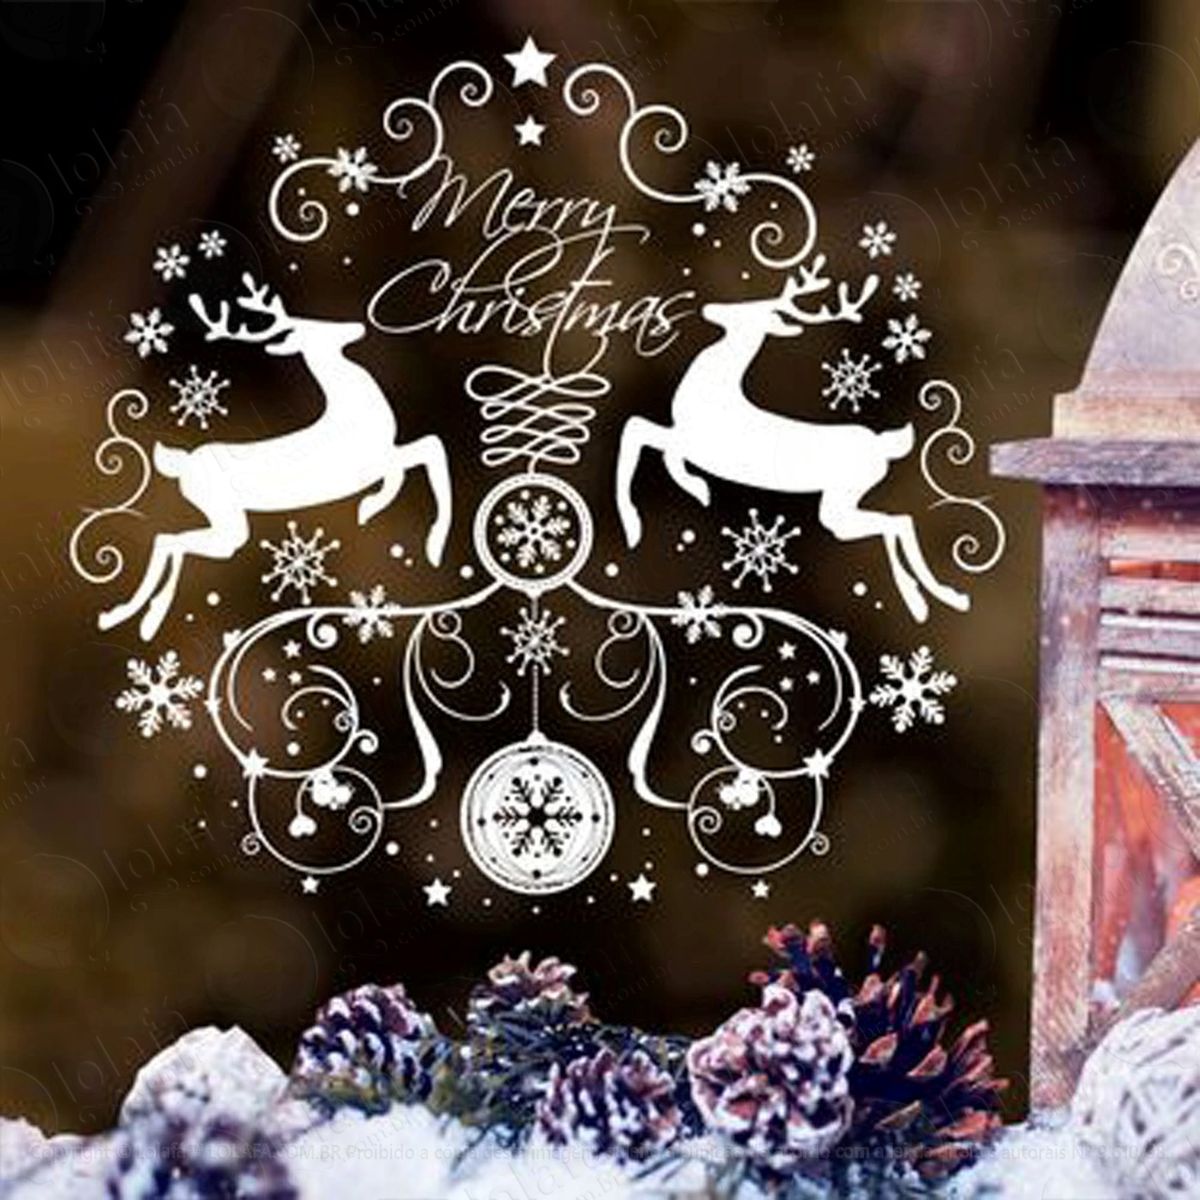 guirlanda e renas adesivo de natal para vitrine, parede, porta de vidro - decoração natalina mod:291